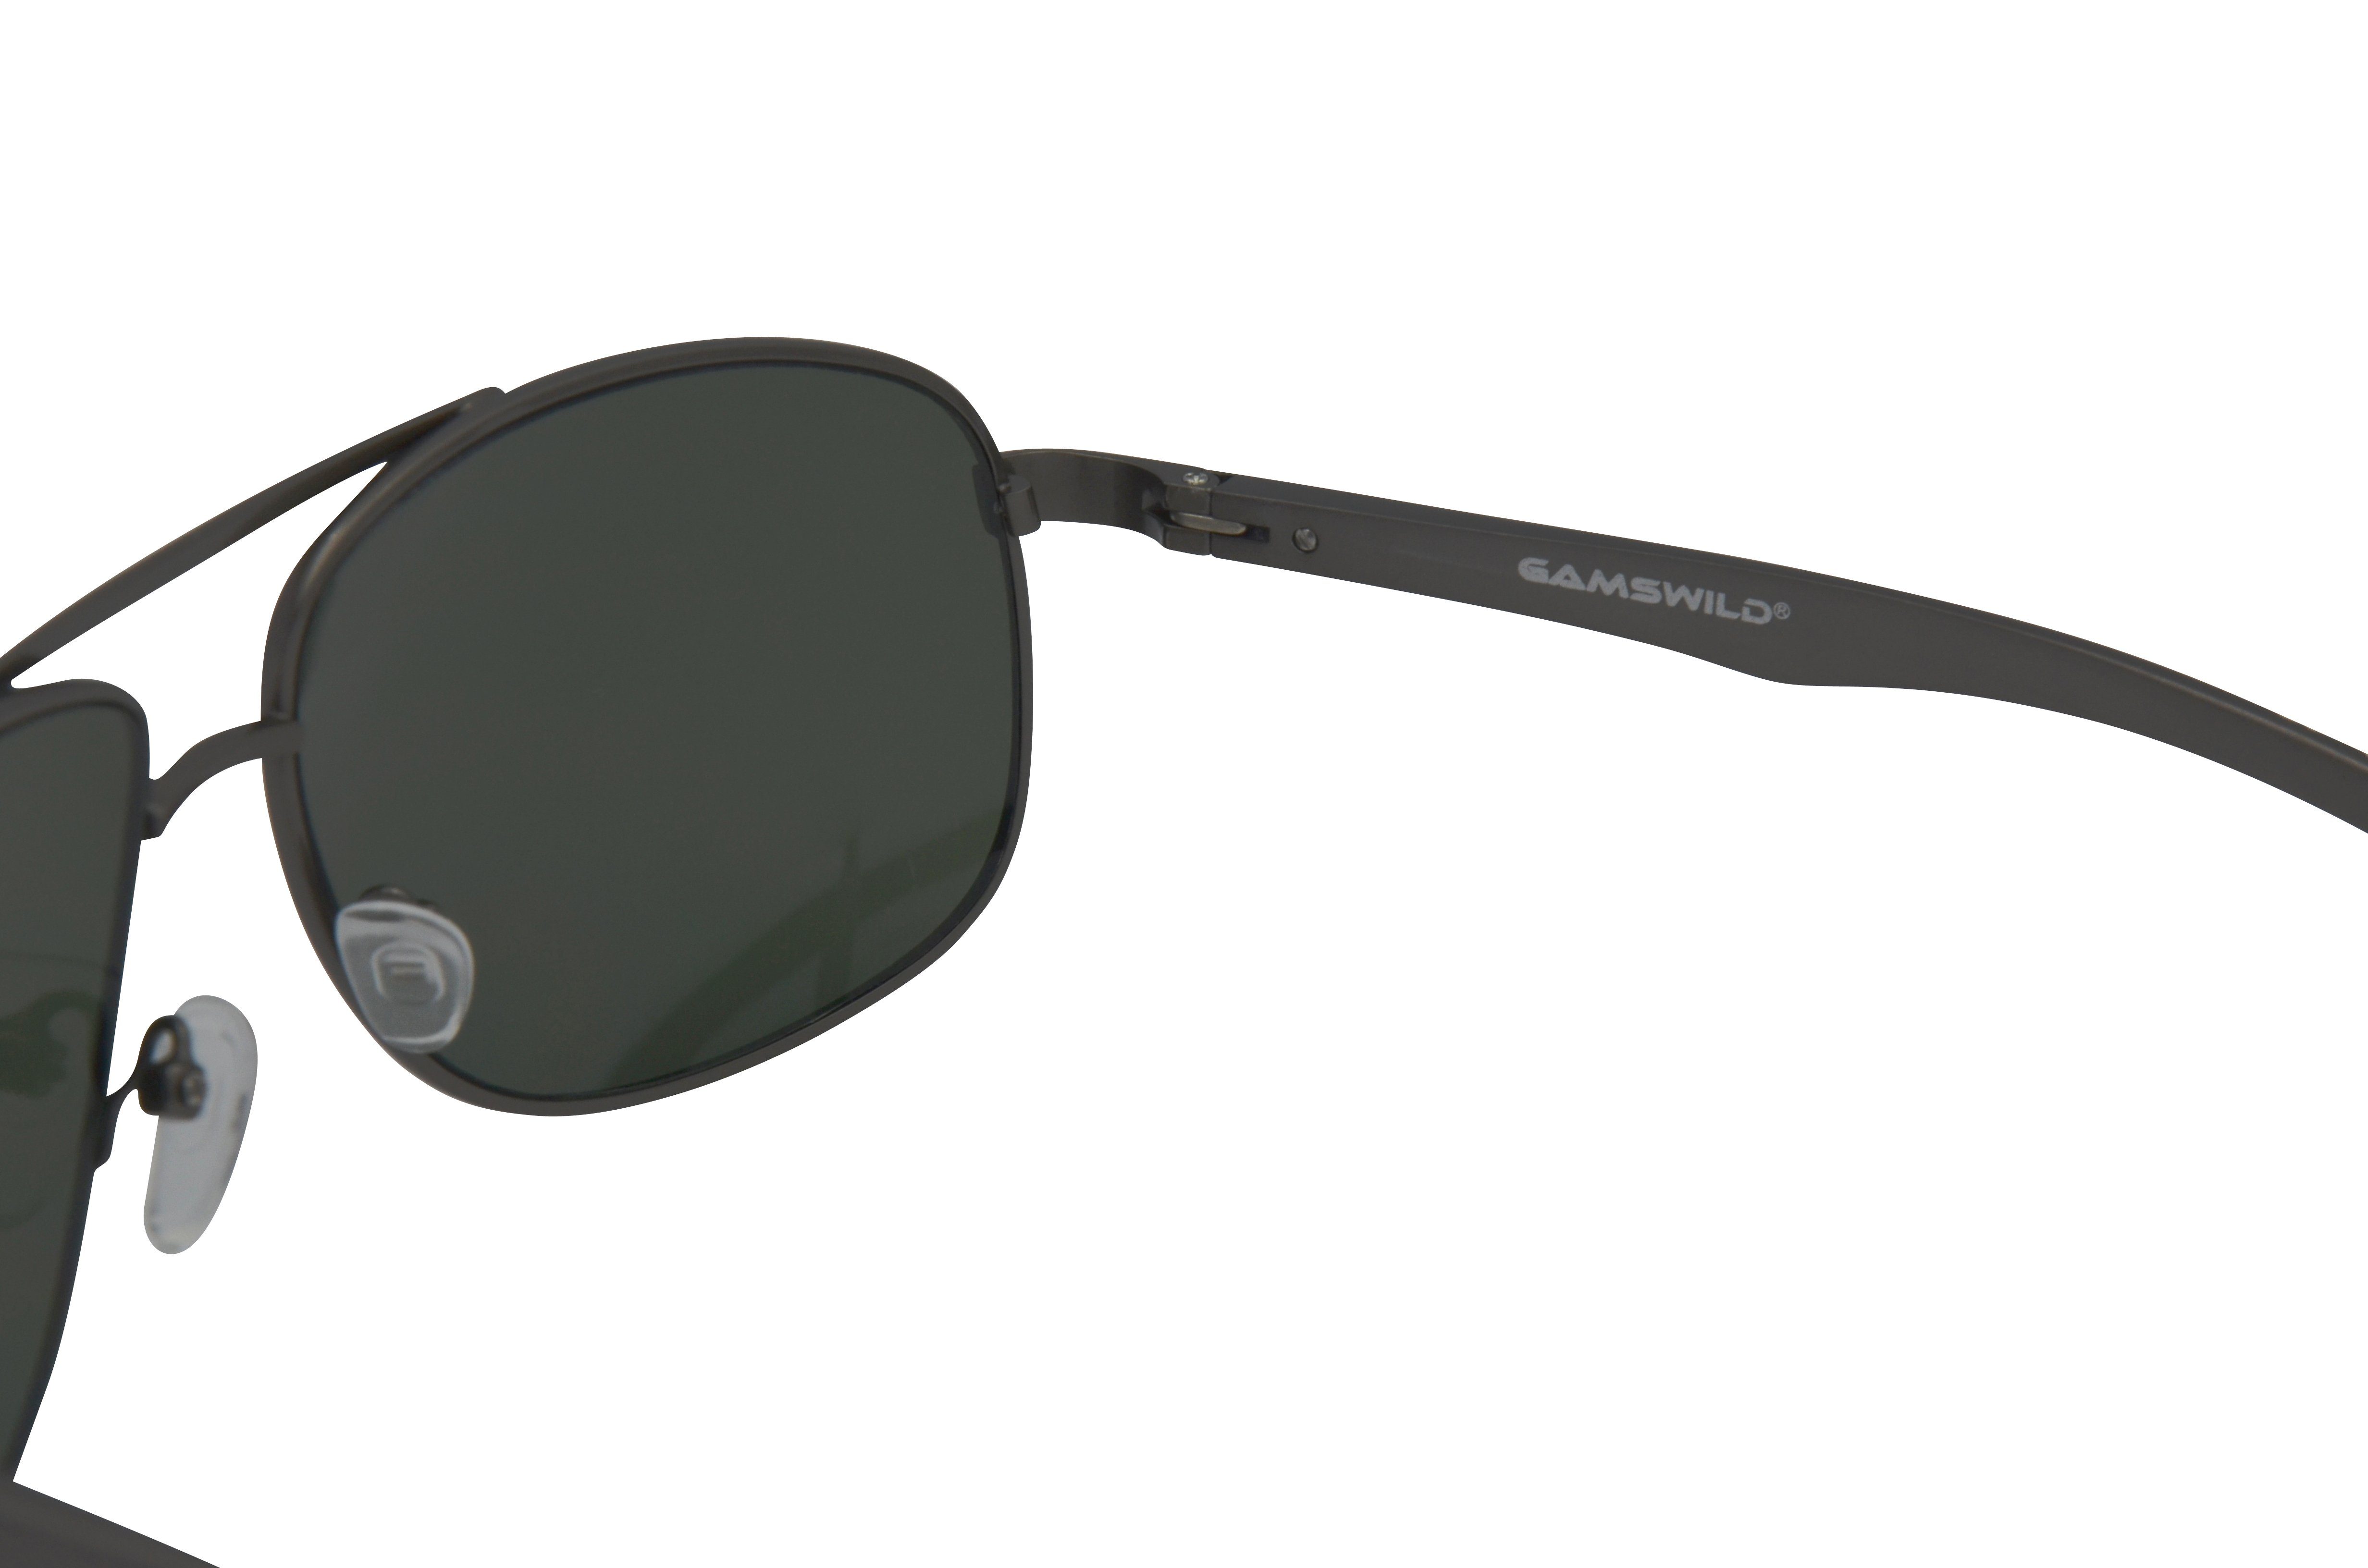 Gamswild Sonnenbrille WM1322 Unisex, Pilotenbrille grau-grün Damen blau-gold, Mode silber-grau, Brille Herren GAMSSTYLE